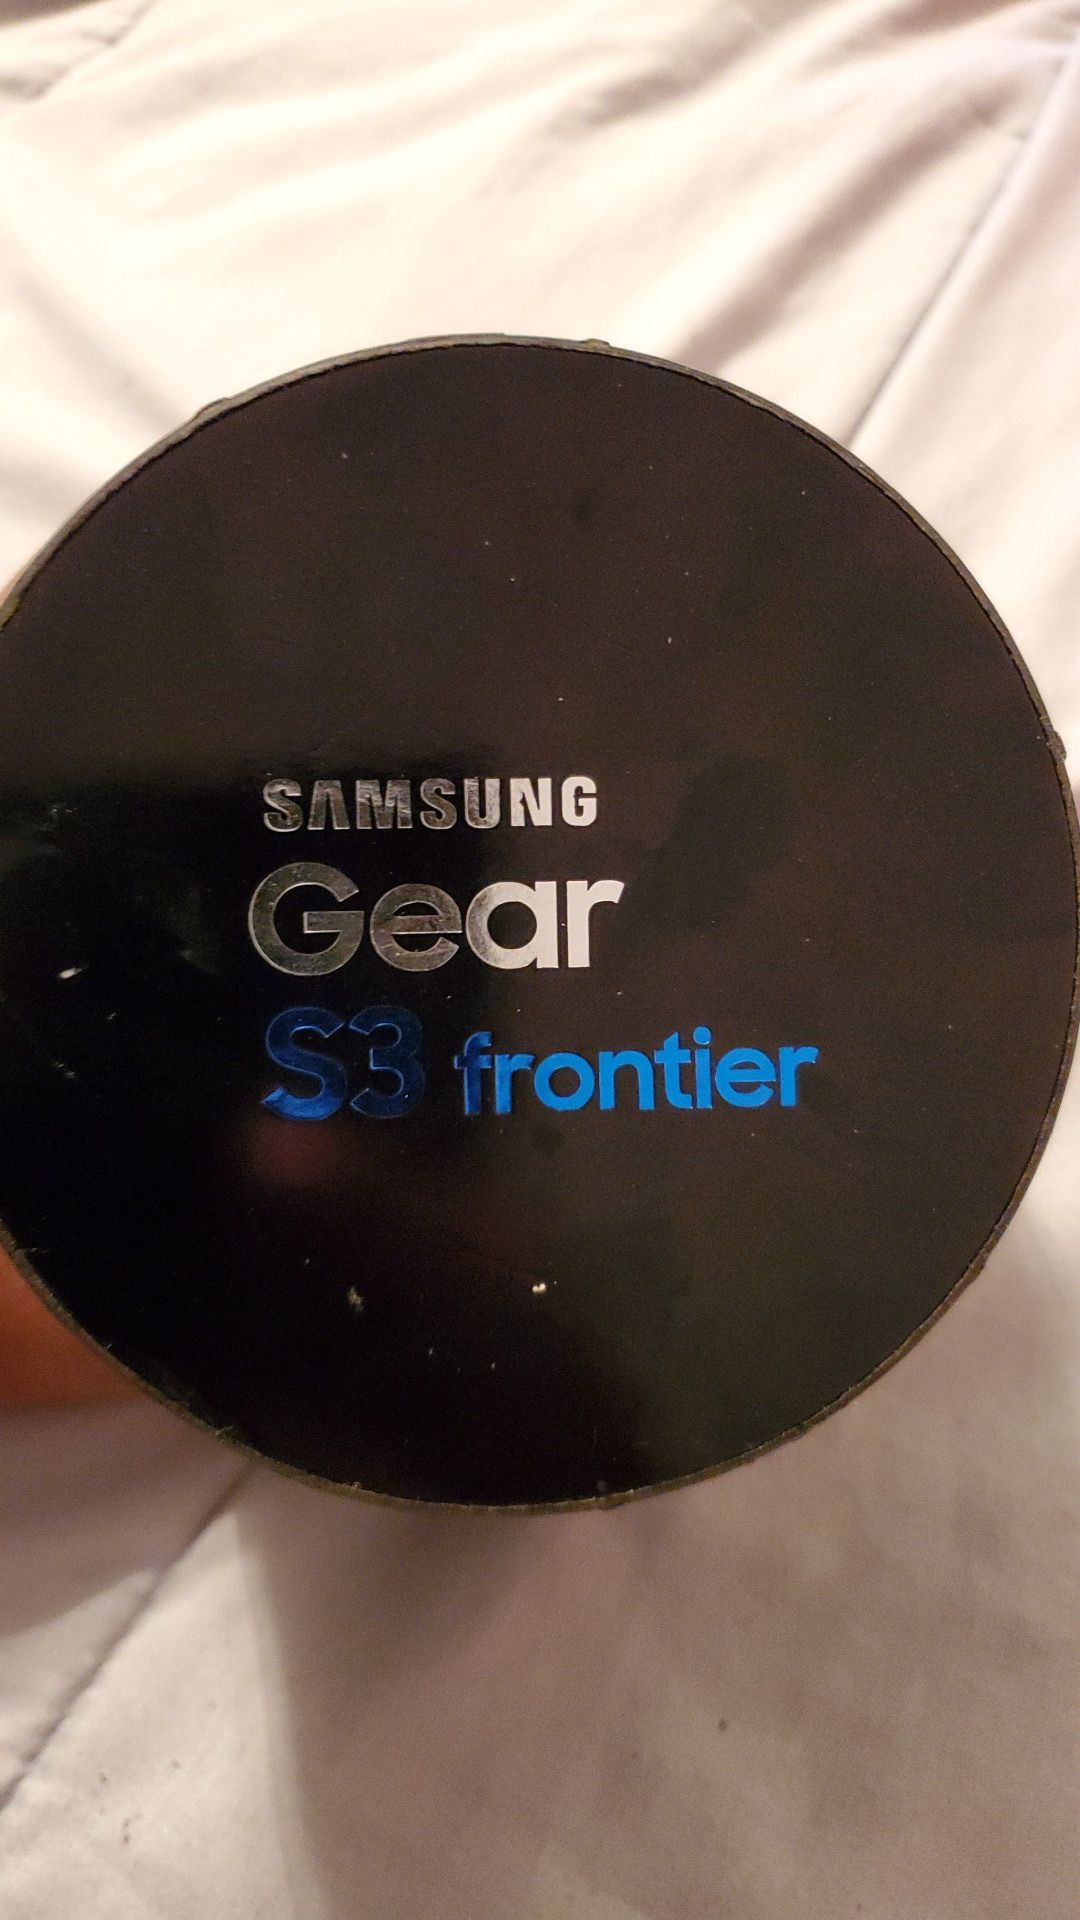 Samsung galaxy s3 frontier